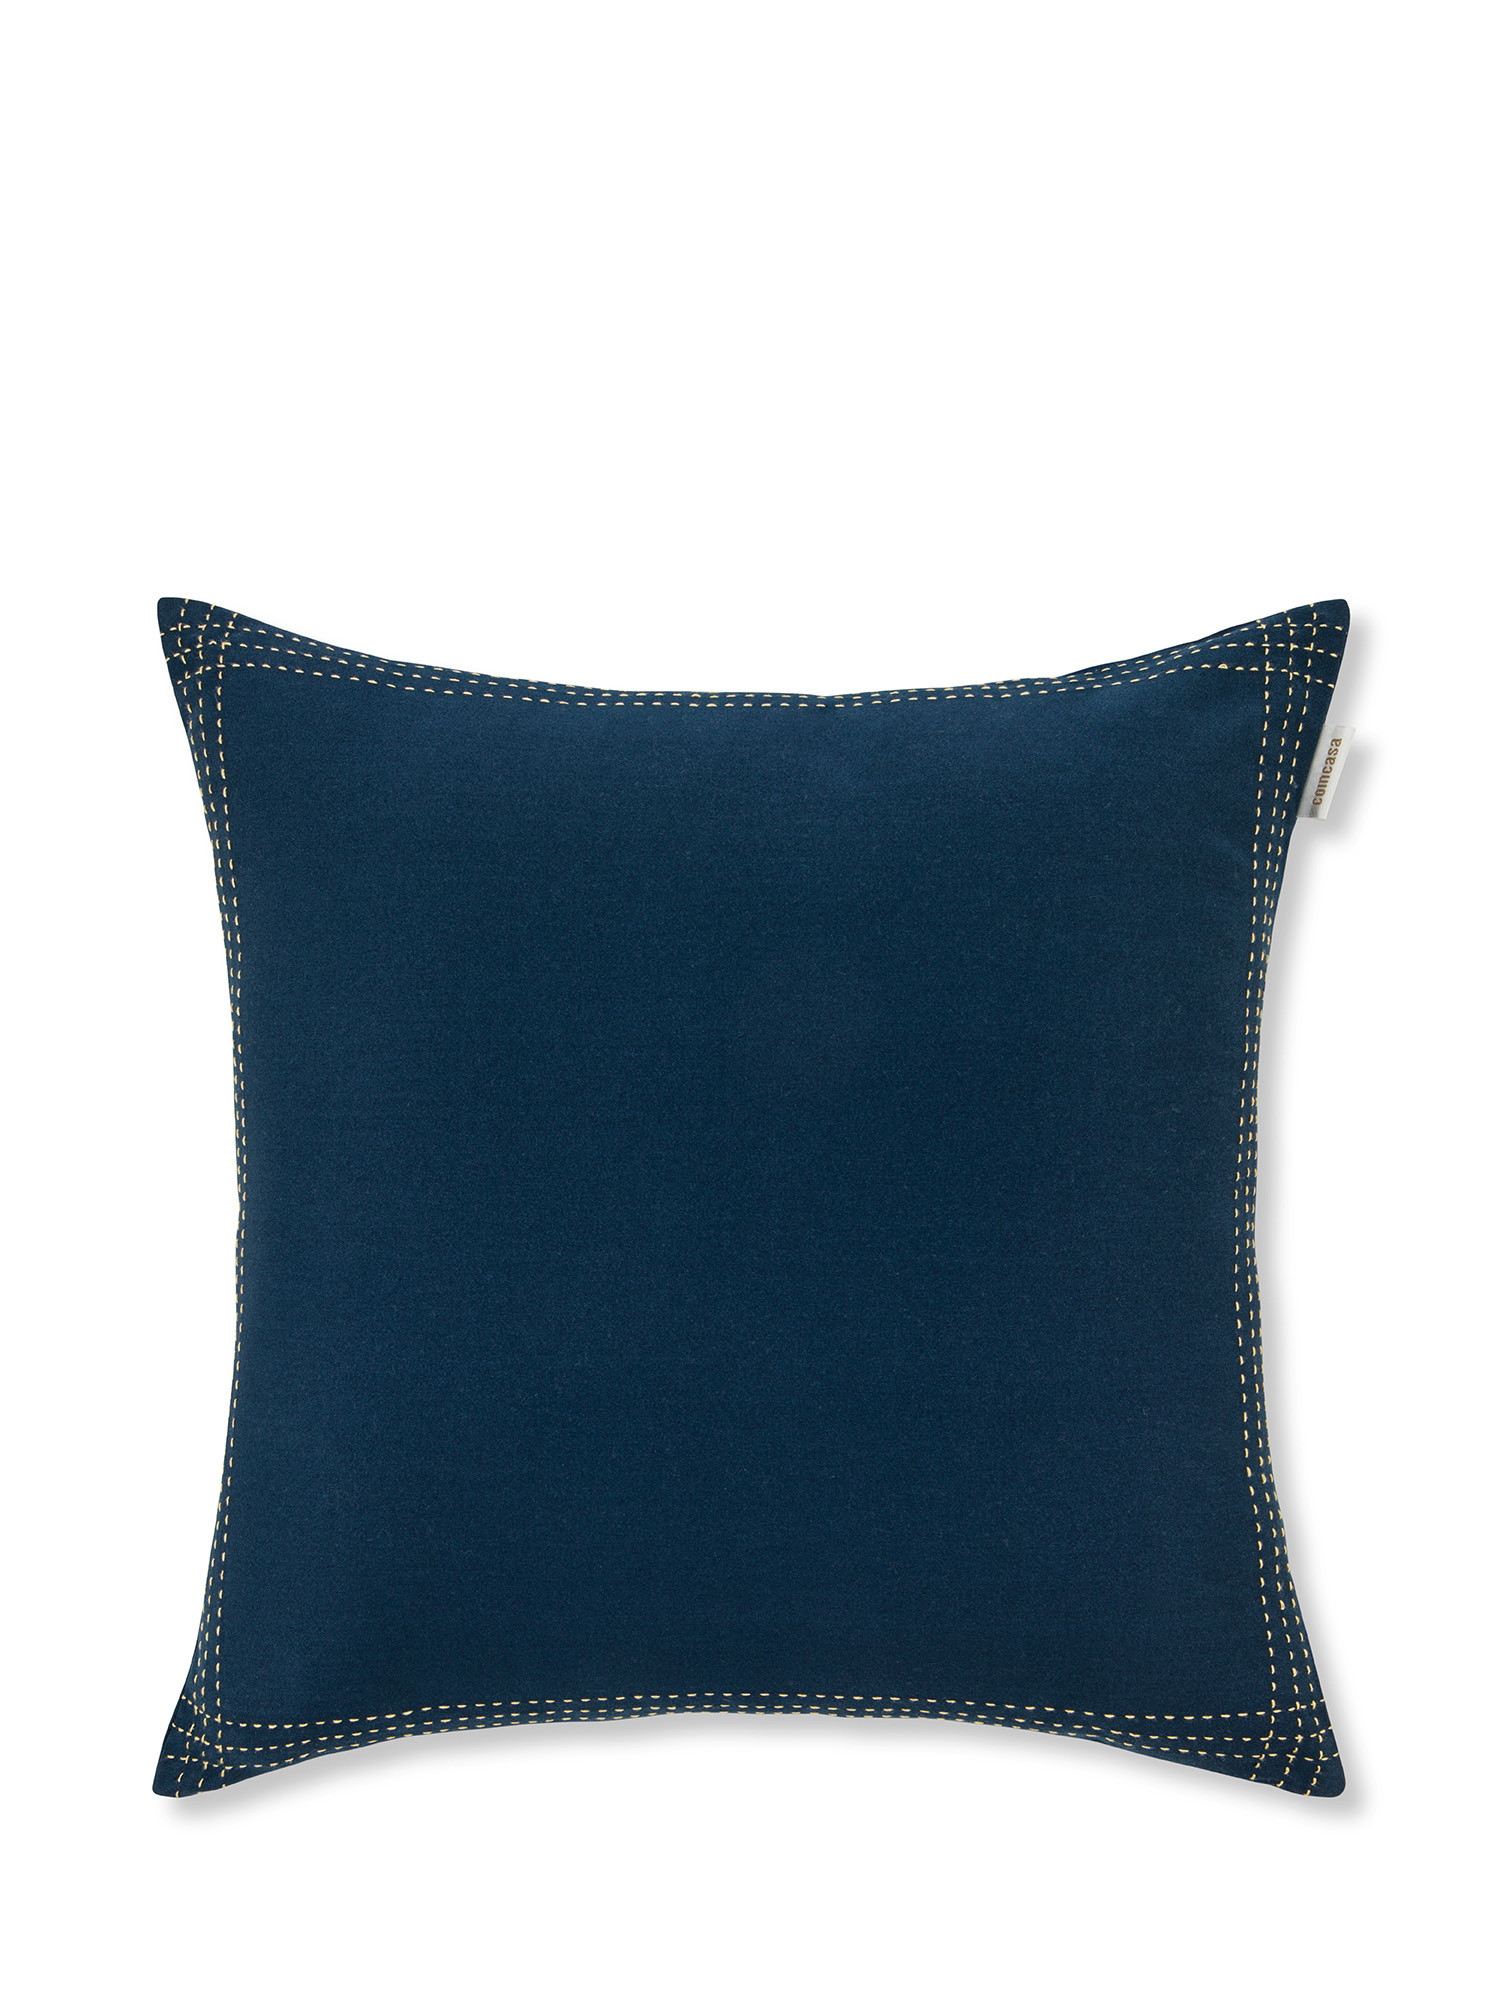 Cuscino twill di cotone con impunture 45x45cm, Blu scuro, large image number 0